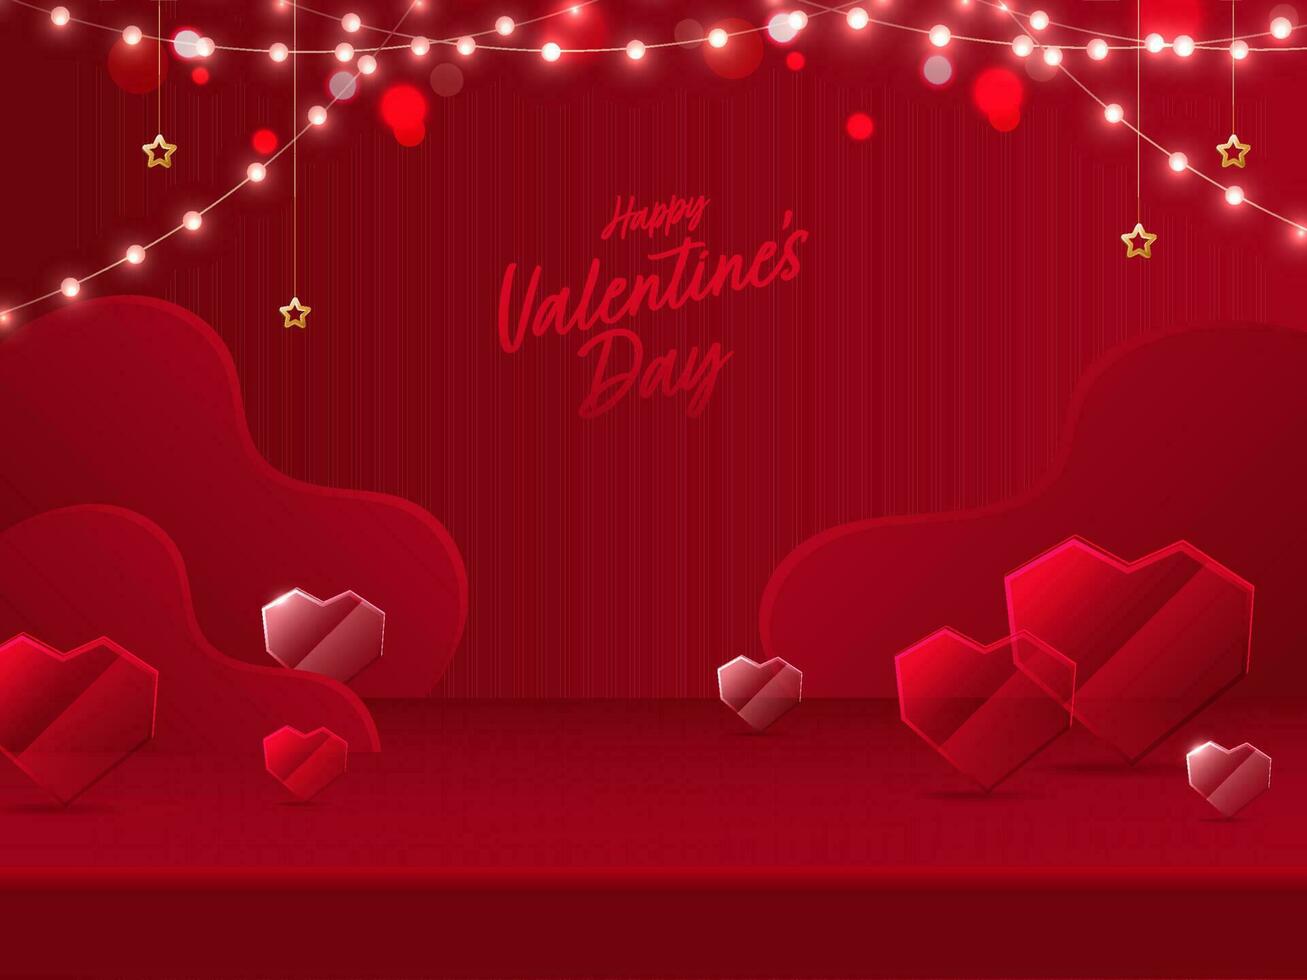 contento San Valentín día fuente con cristal o vaso corazones, dorado estrellas y Encendiendo guirnalda en rojo antecedentes. vector